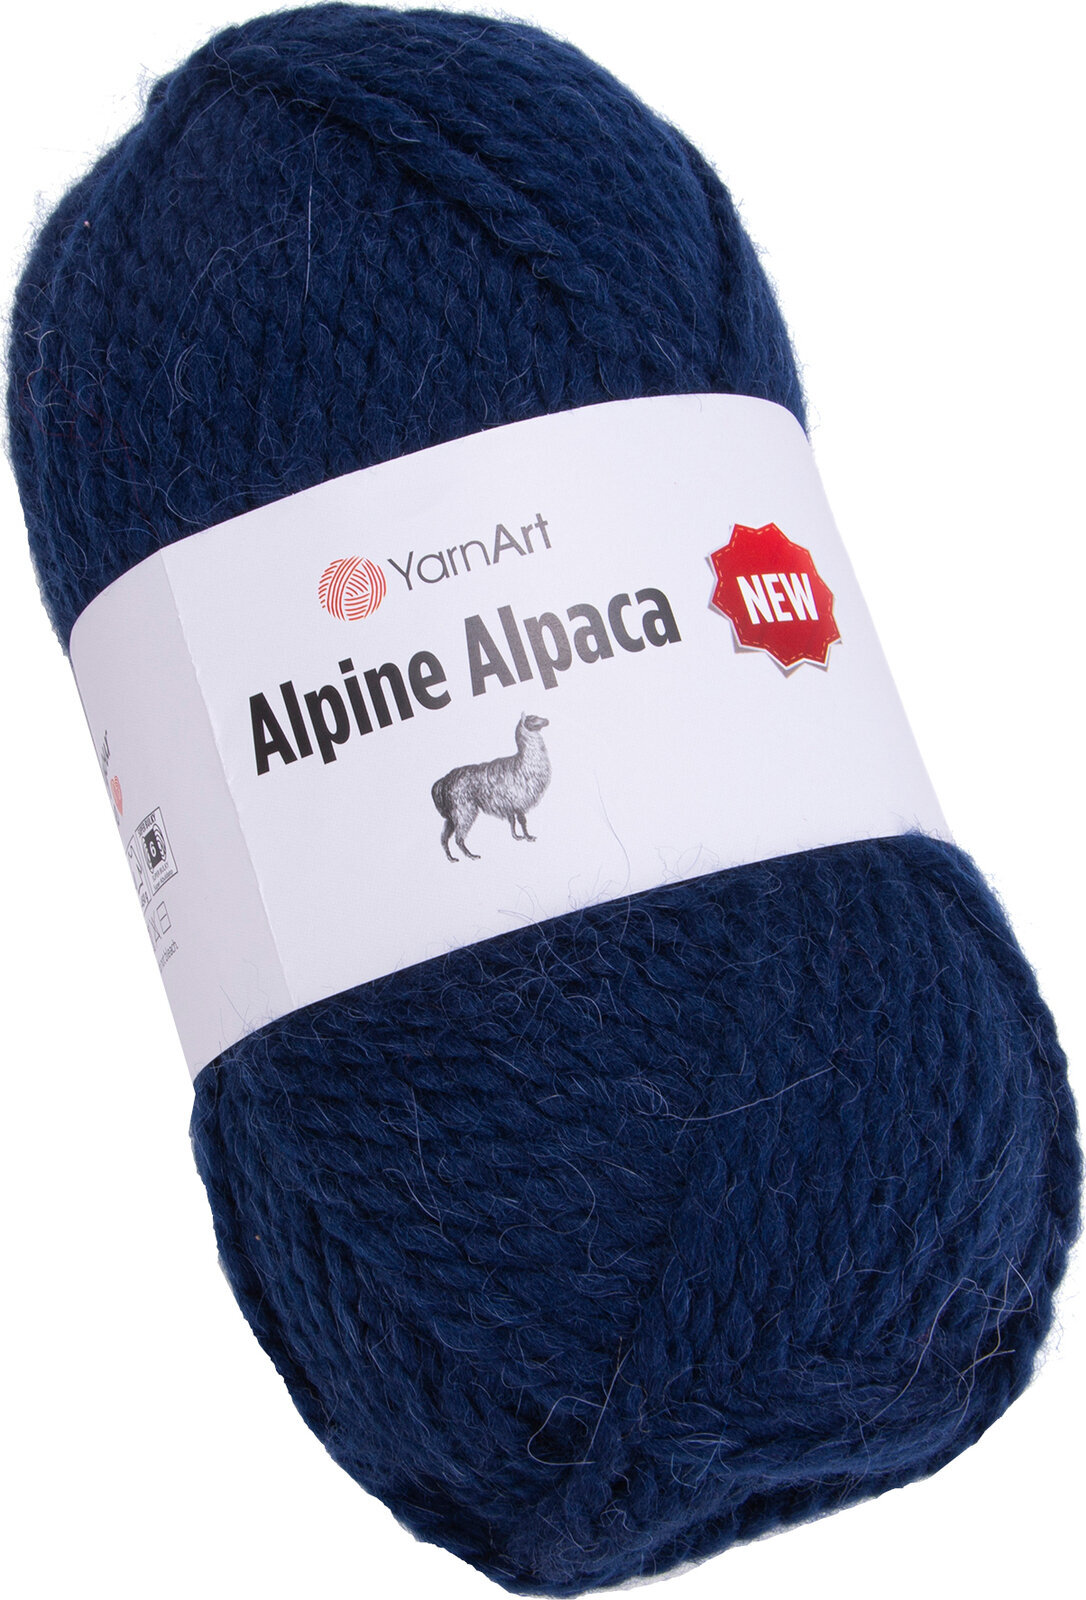 Fire de tricotat Yarn Art Alpine Alpaca New 1437 Fire de tricotat